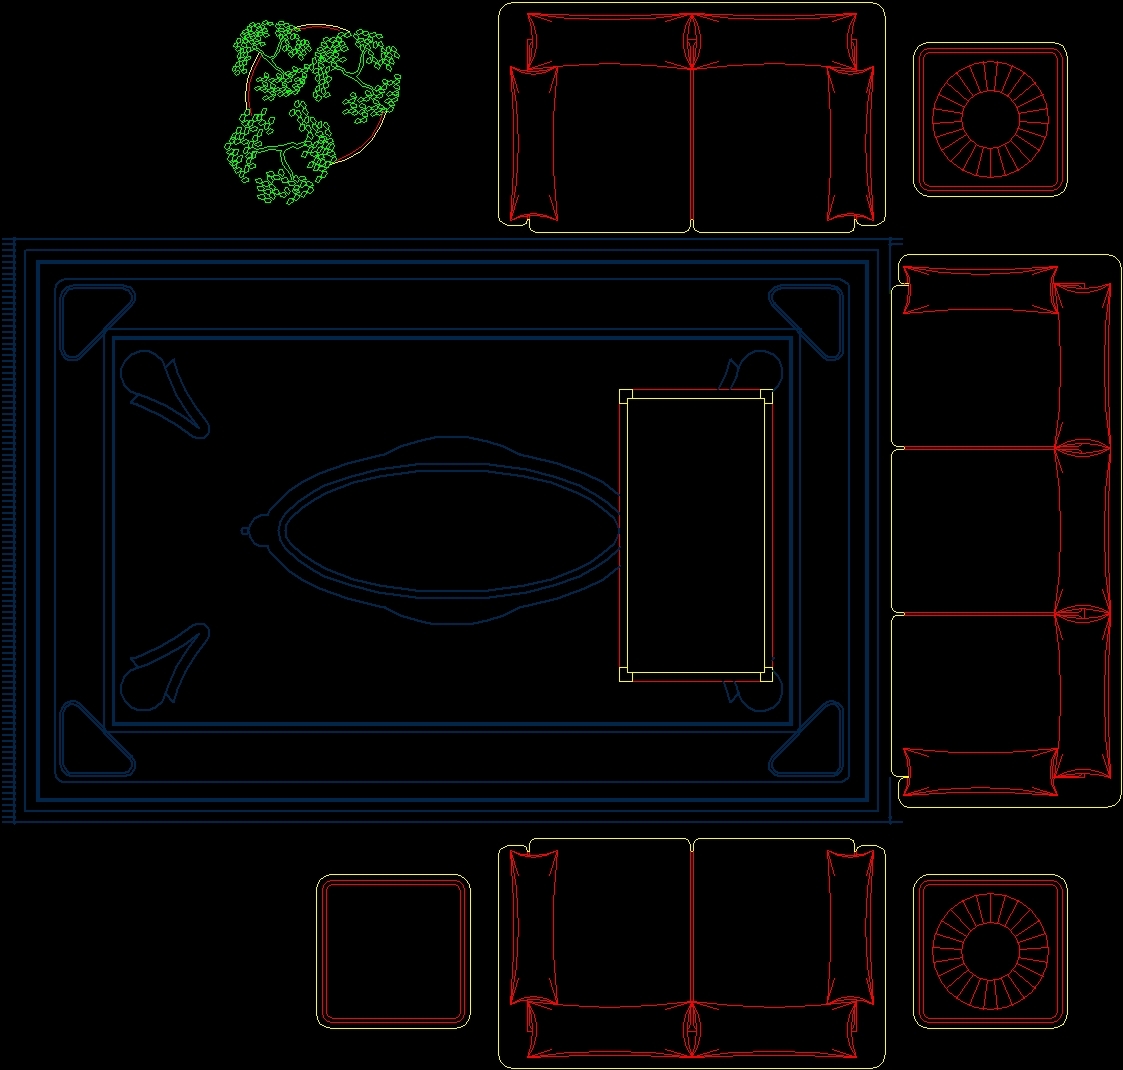 Living Room 2D DWG Block For AutoCAD Designs CAD